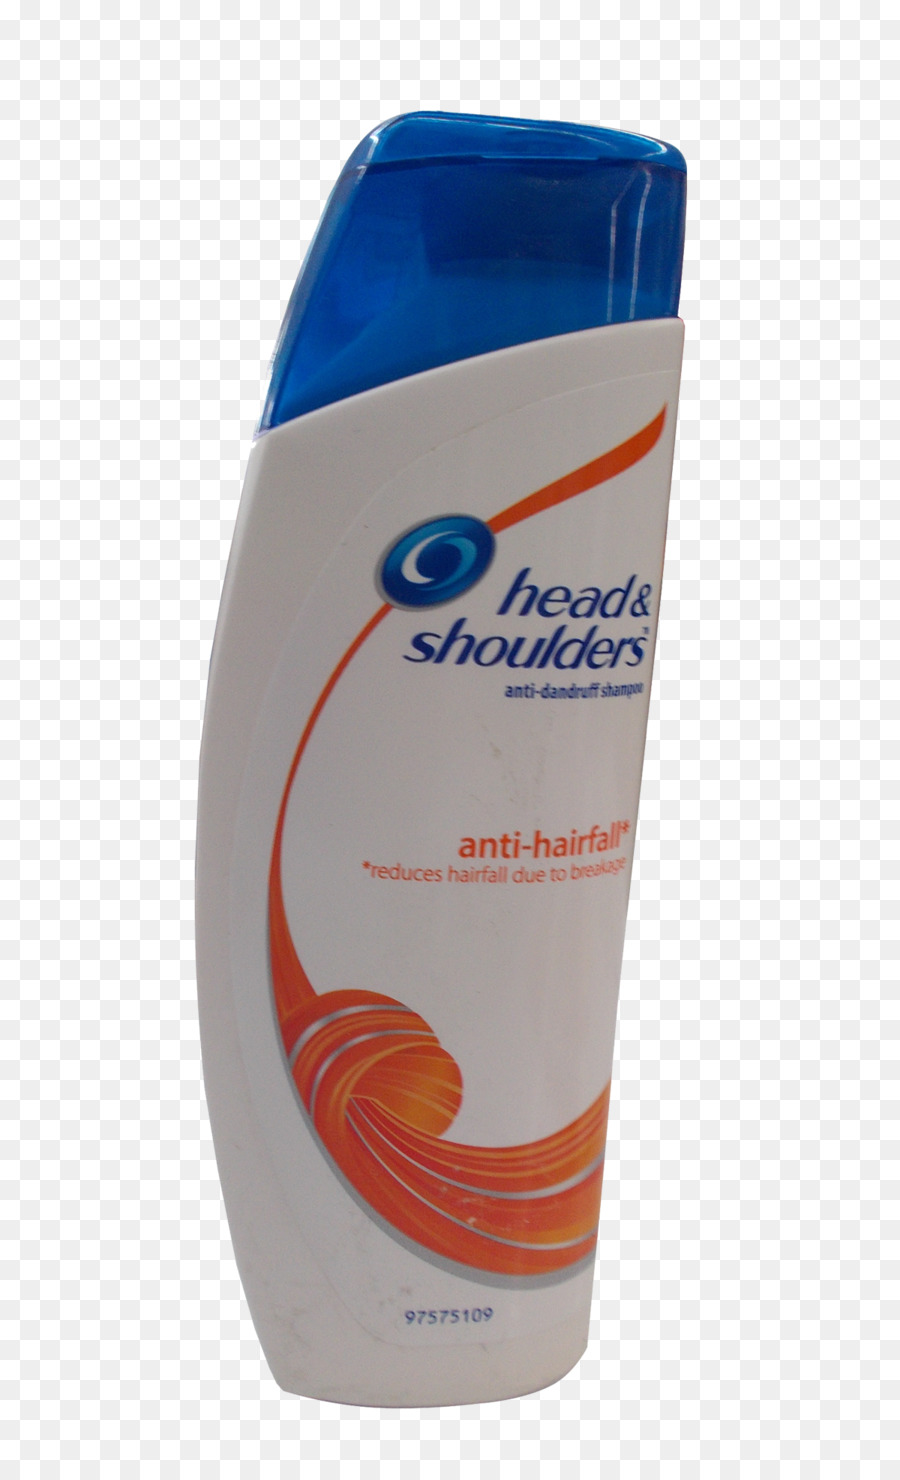 Head & Shoulders Shampoo Haarausfall Schuppen - Shampoo